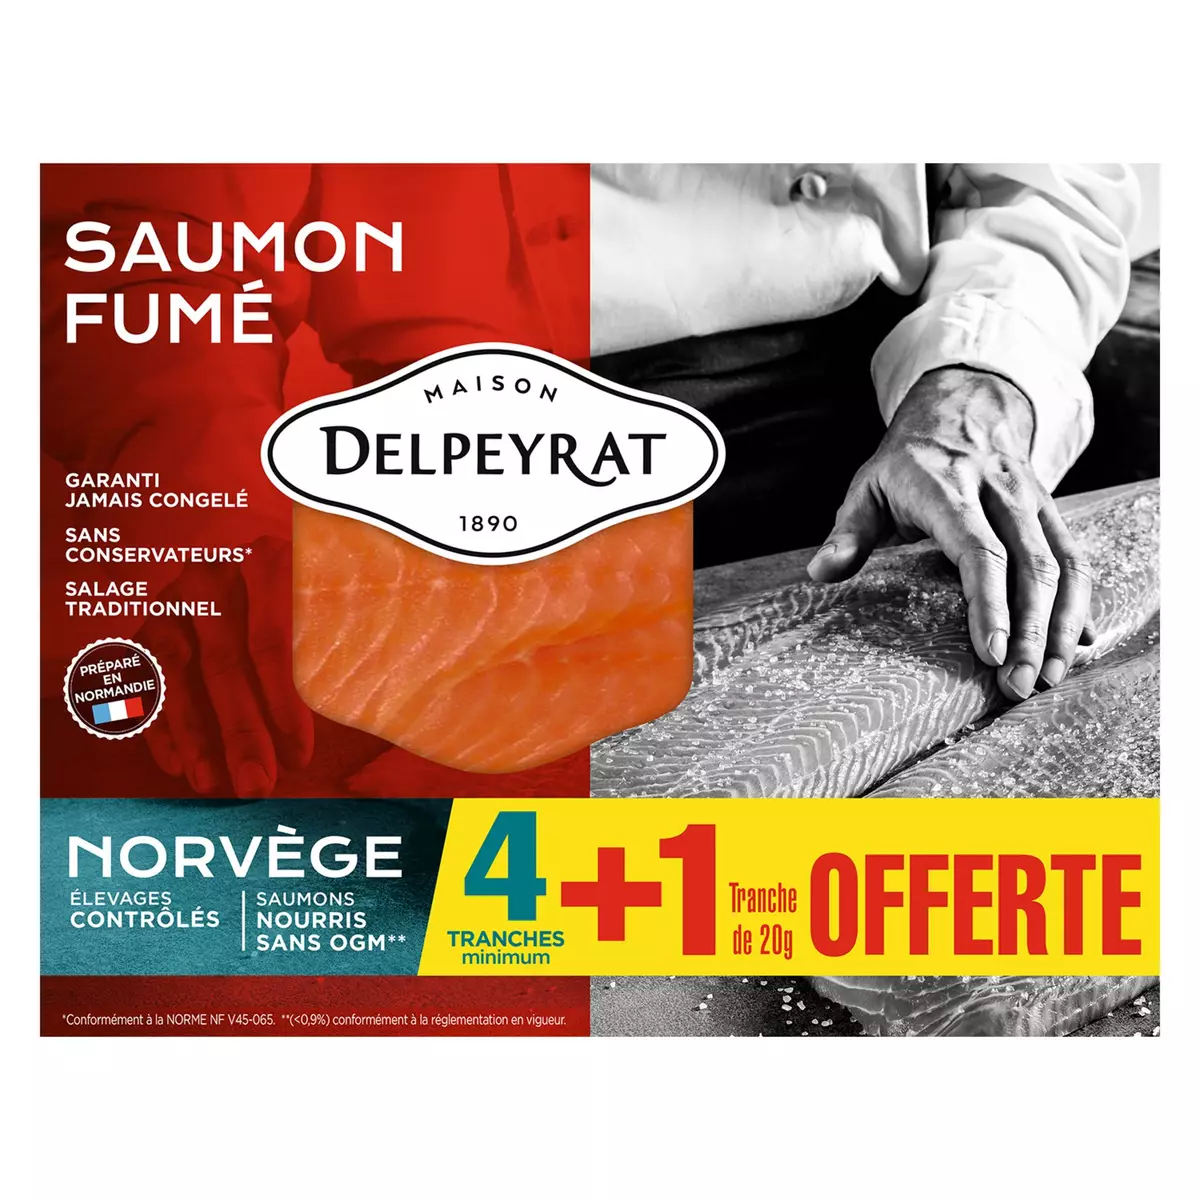 DELPEYRAT Saumon Fumé 4 de Norvège 4 tranches+1 offerte 160g